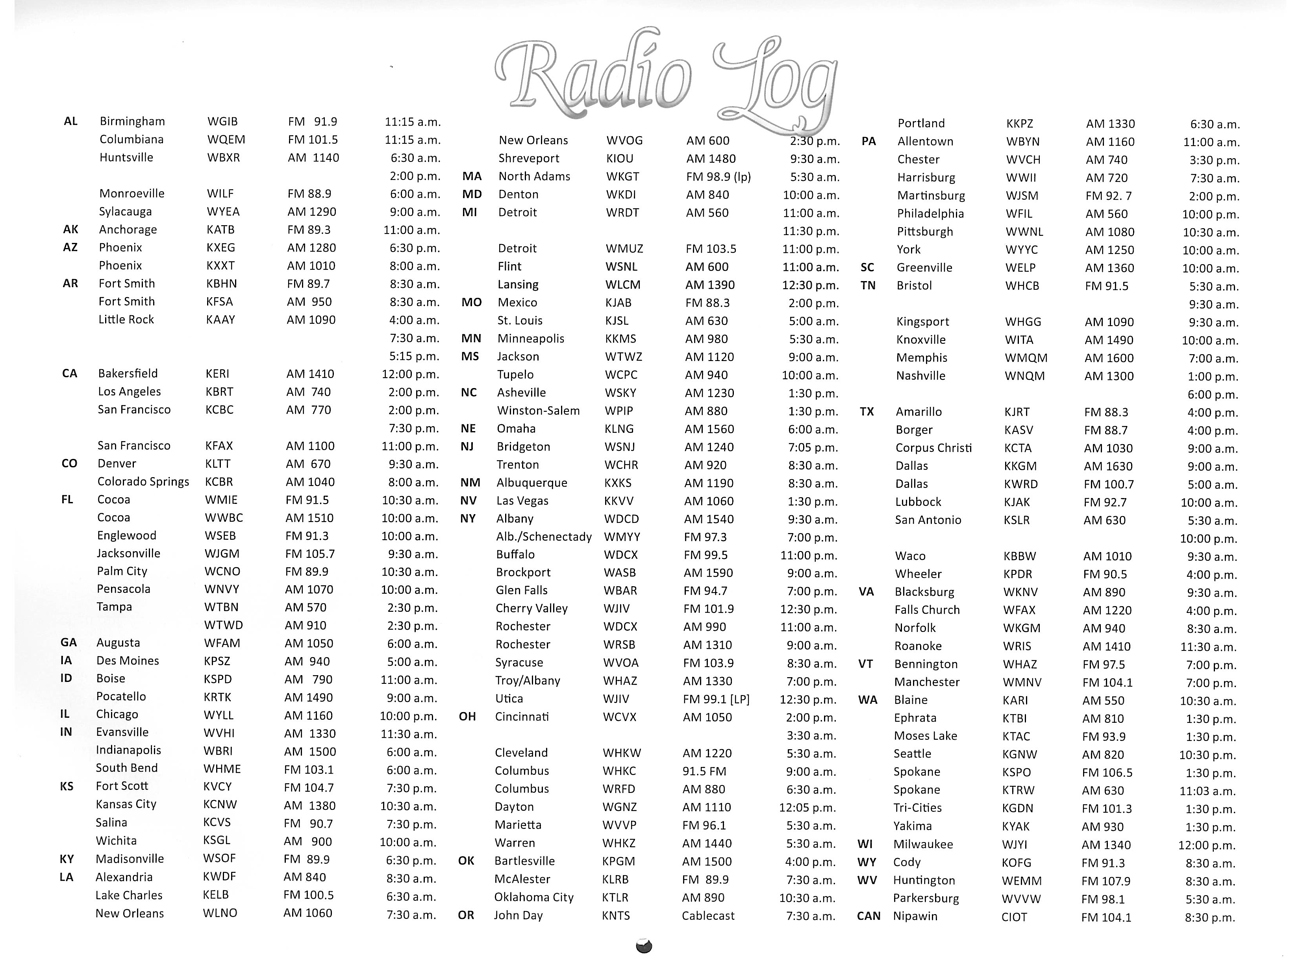 2012 Prophecy Calendar: Radio Log